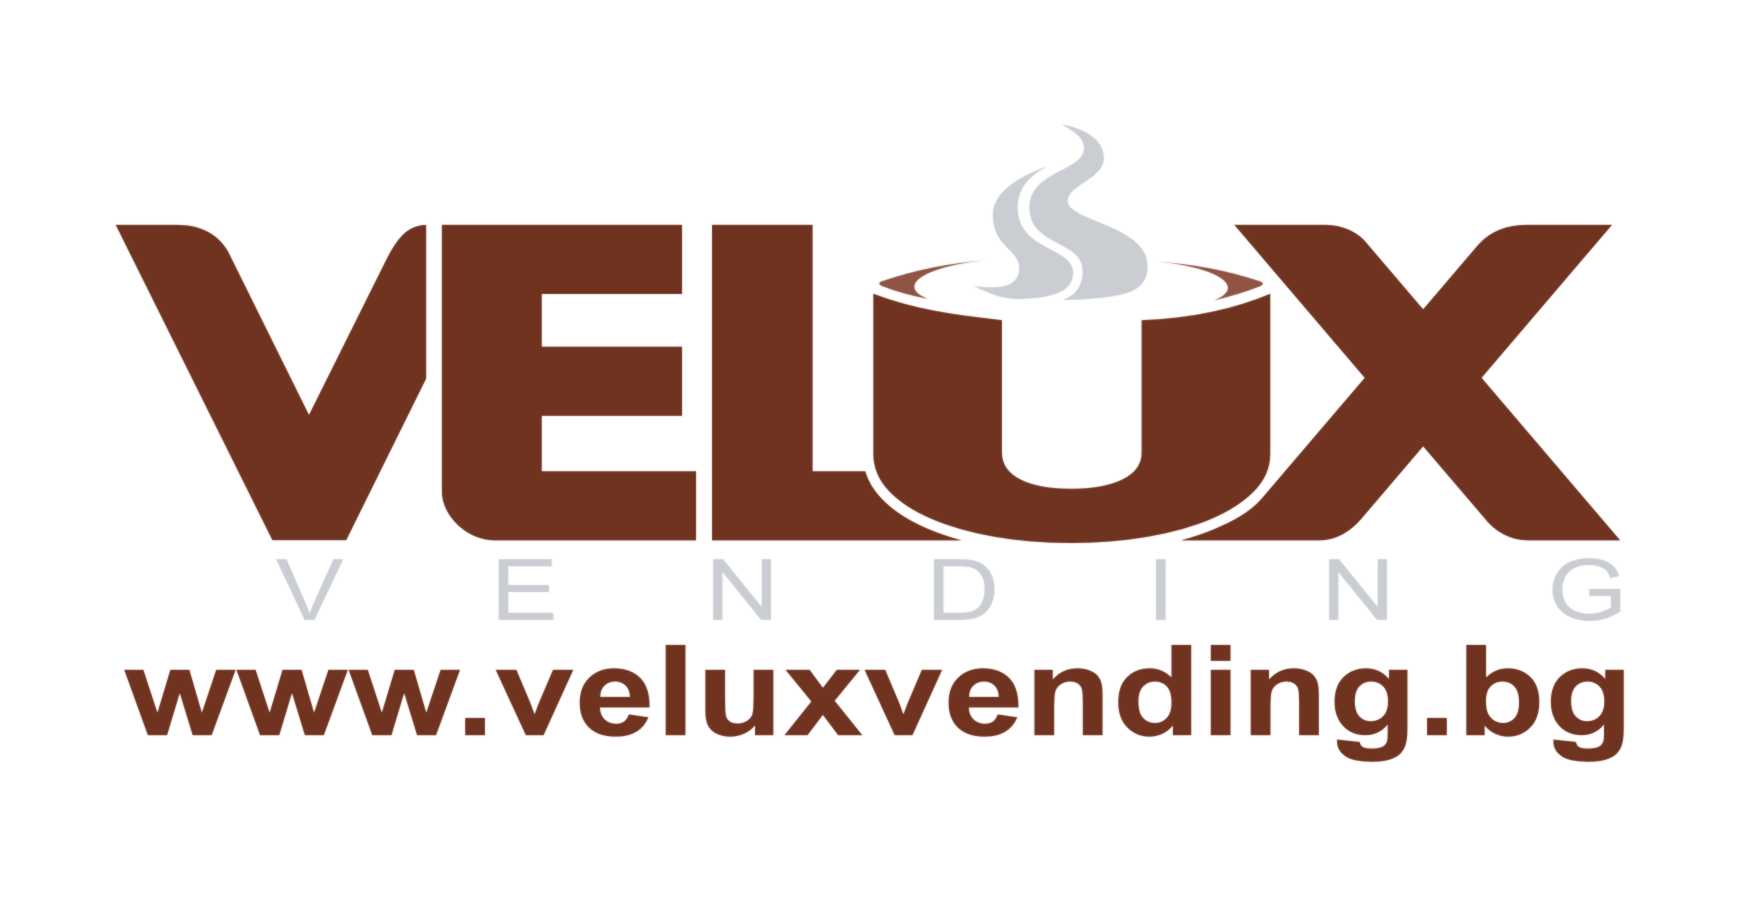 VELUX Logo - Velux Vending - IVV - International Vending Venture